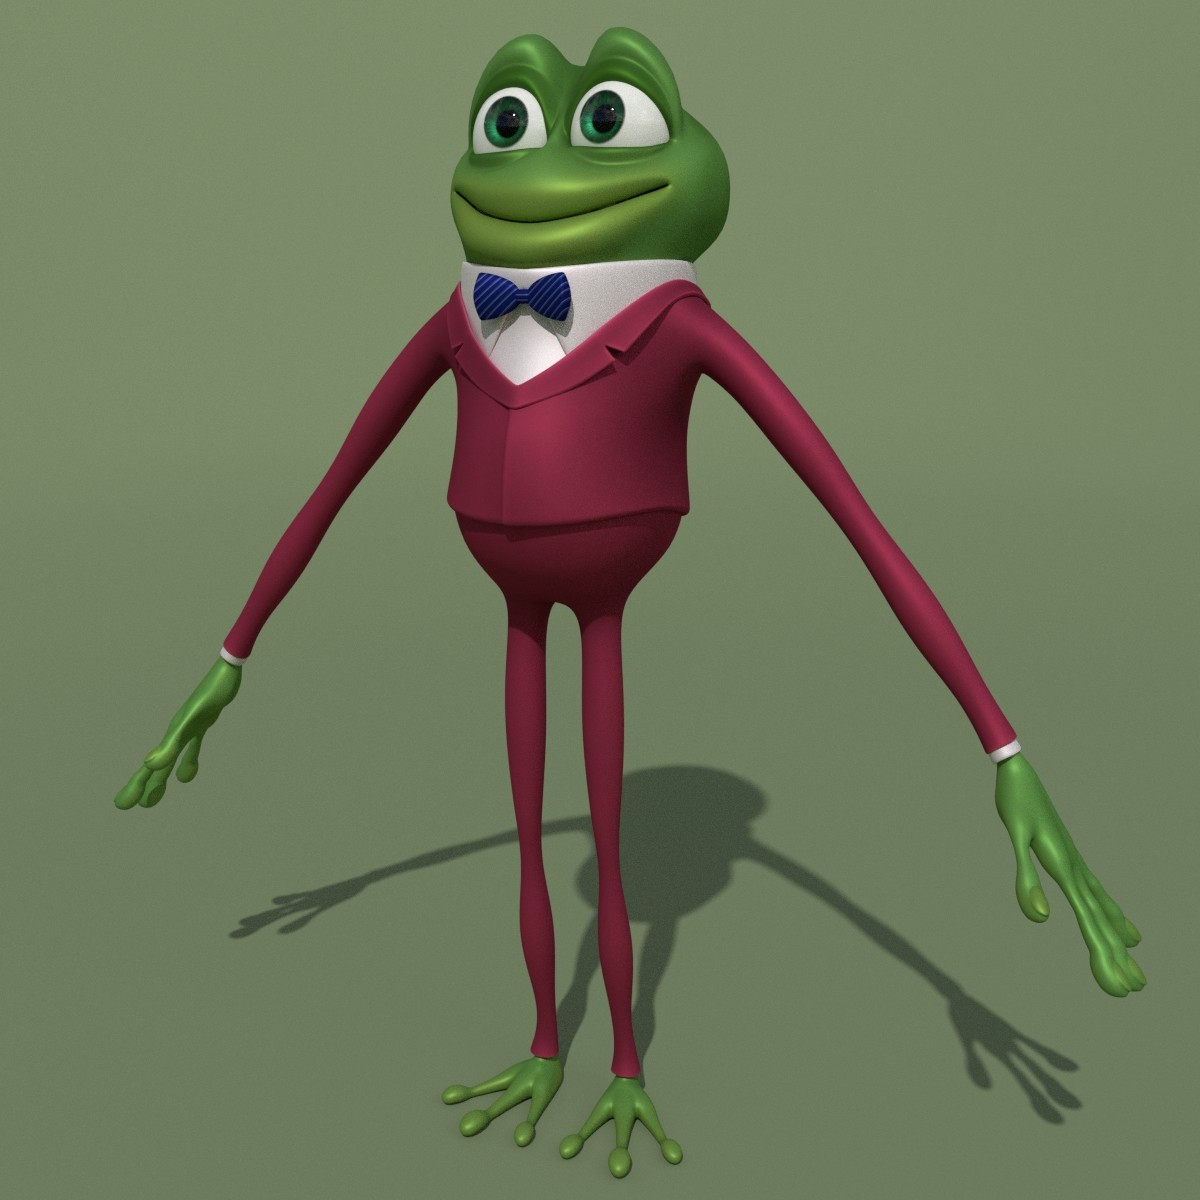 ArtStation - Cartoon Frog in Suit | Resources